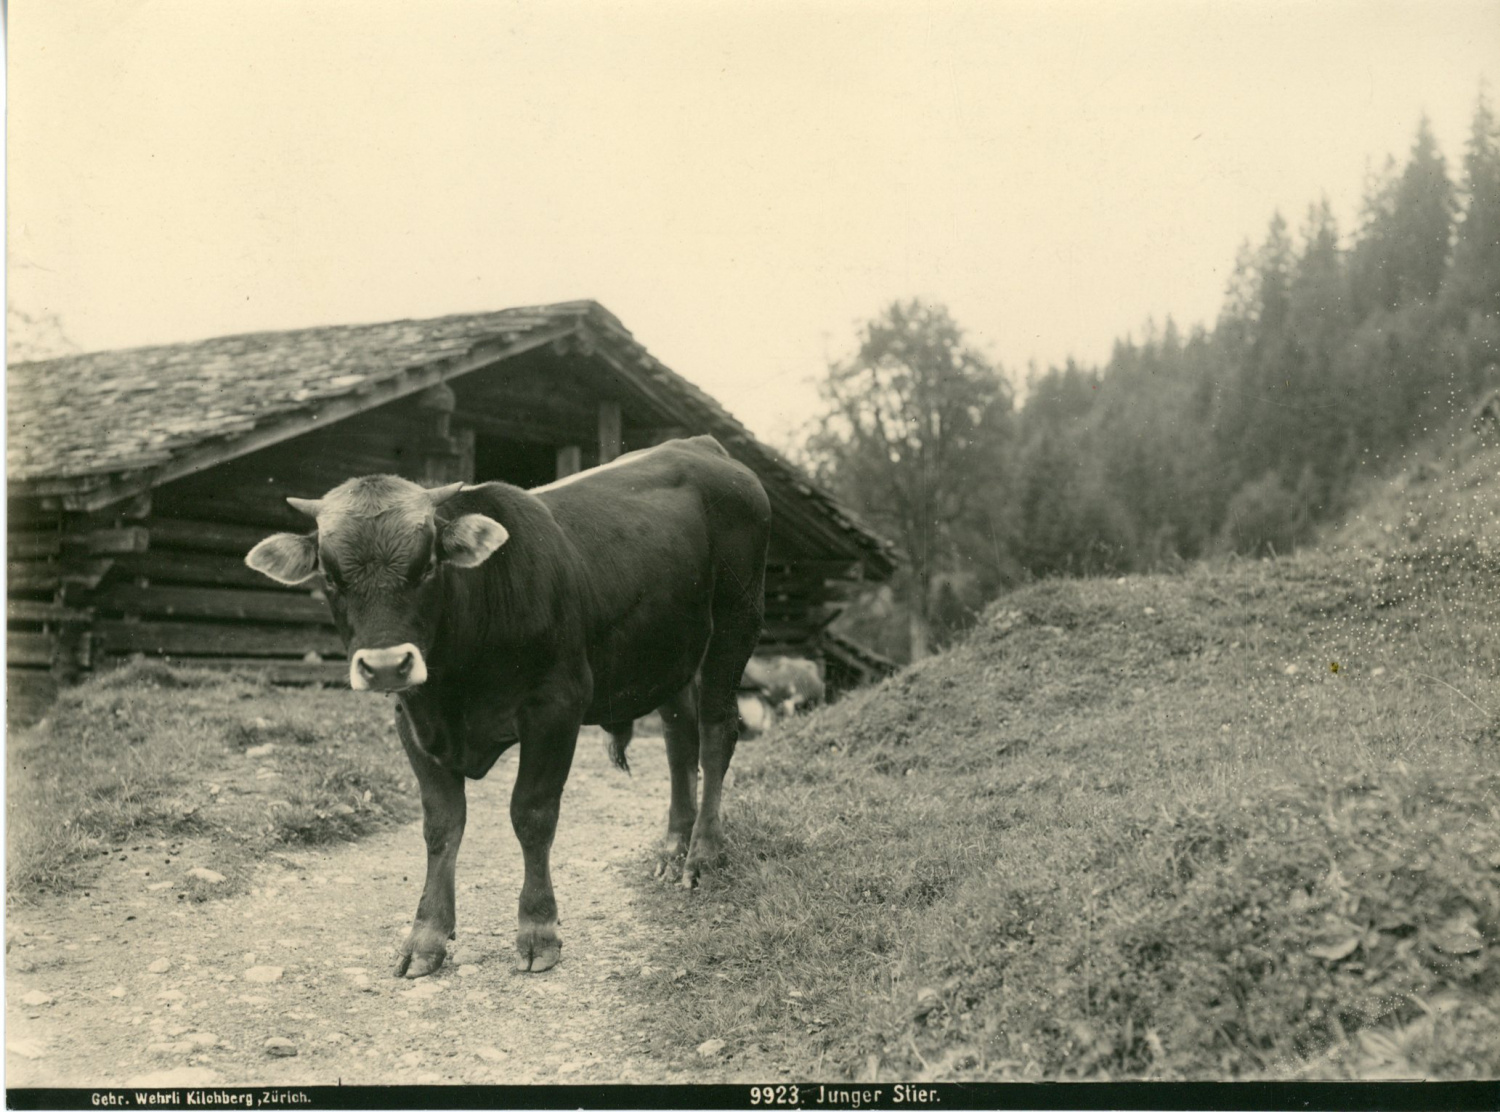 Suisse, Alpes Suisses, junger stier, jeune boeuf by Photographie originale  / Original photograph: (1910) Photograph